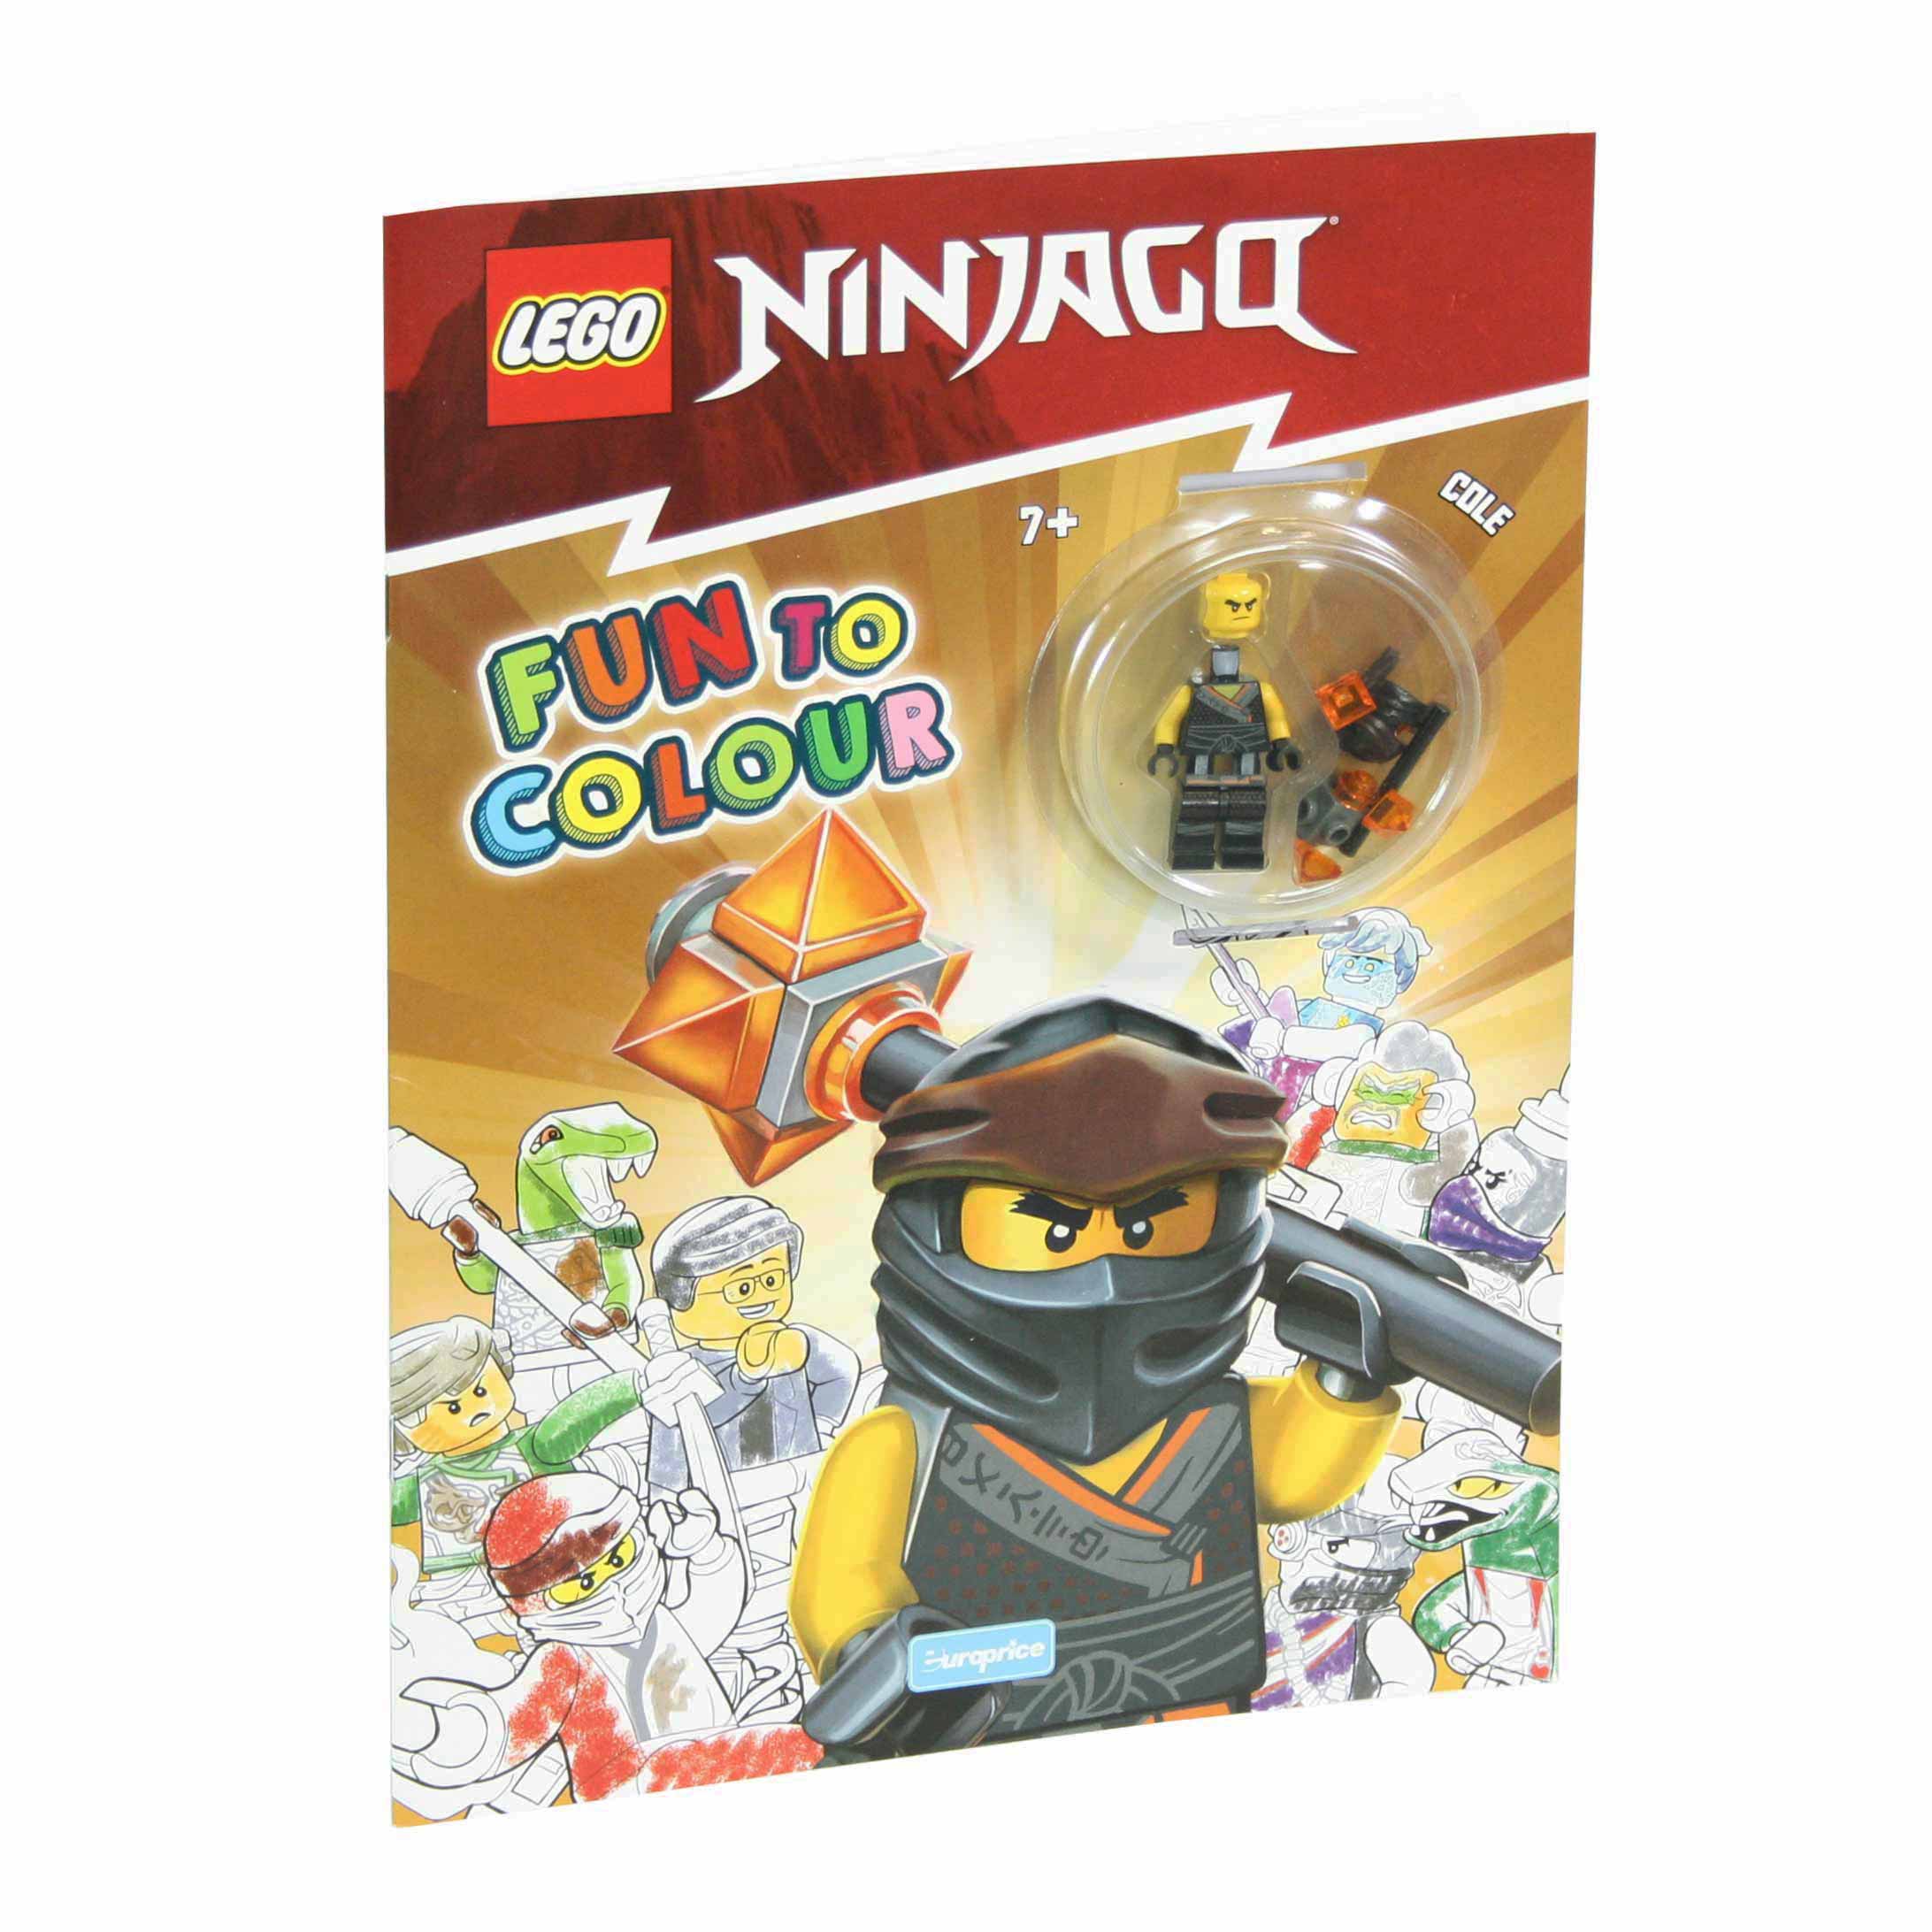 Imagem da capa do livro de pintar Lego Fun to Colour - Ninjago Cole com a minifigura